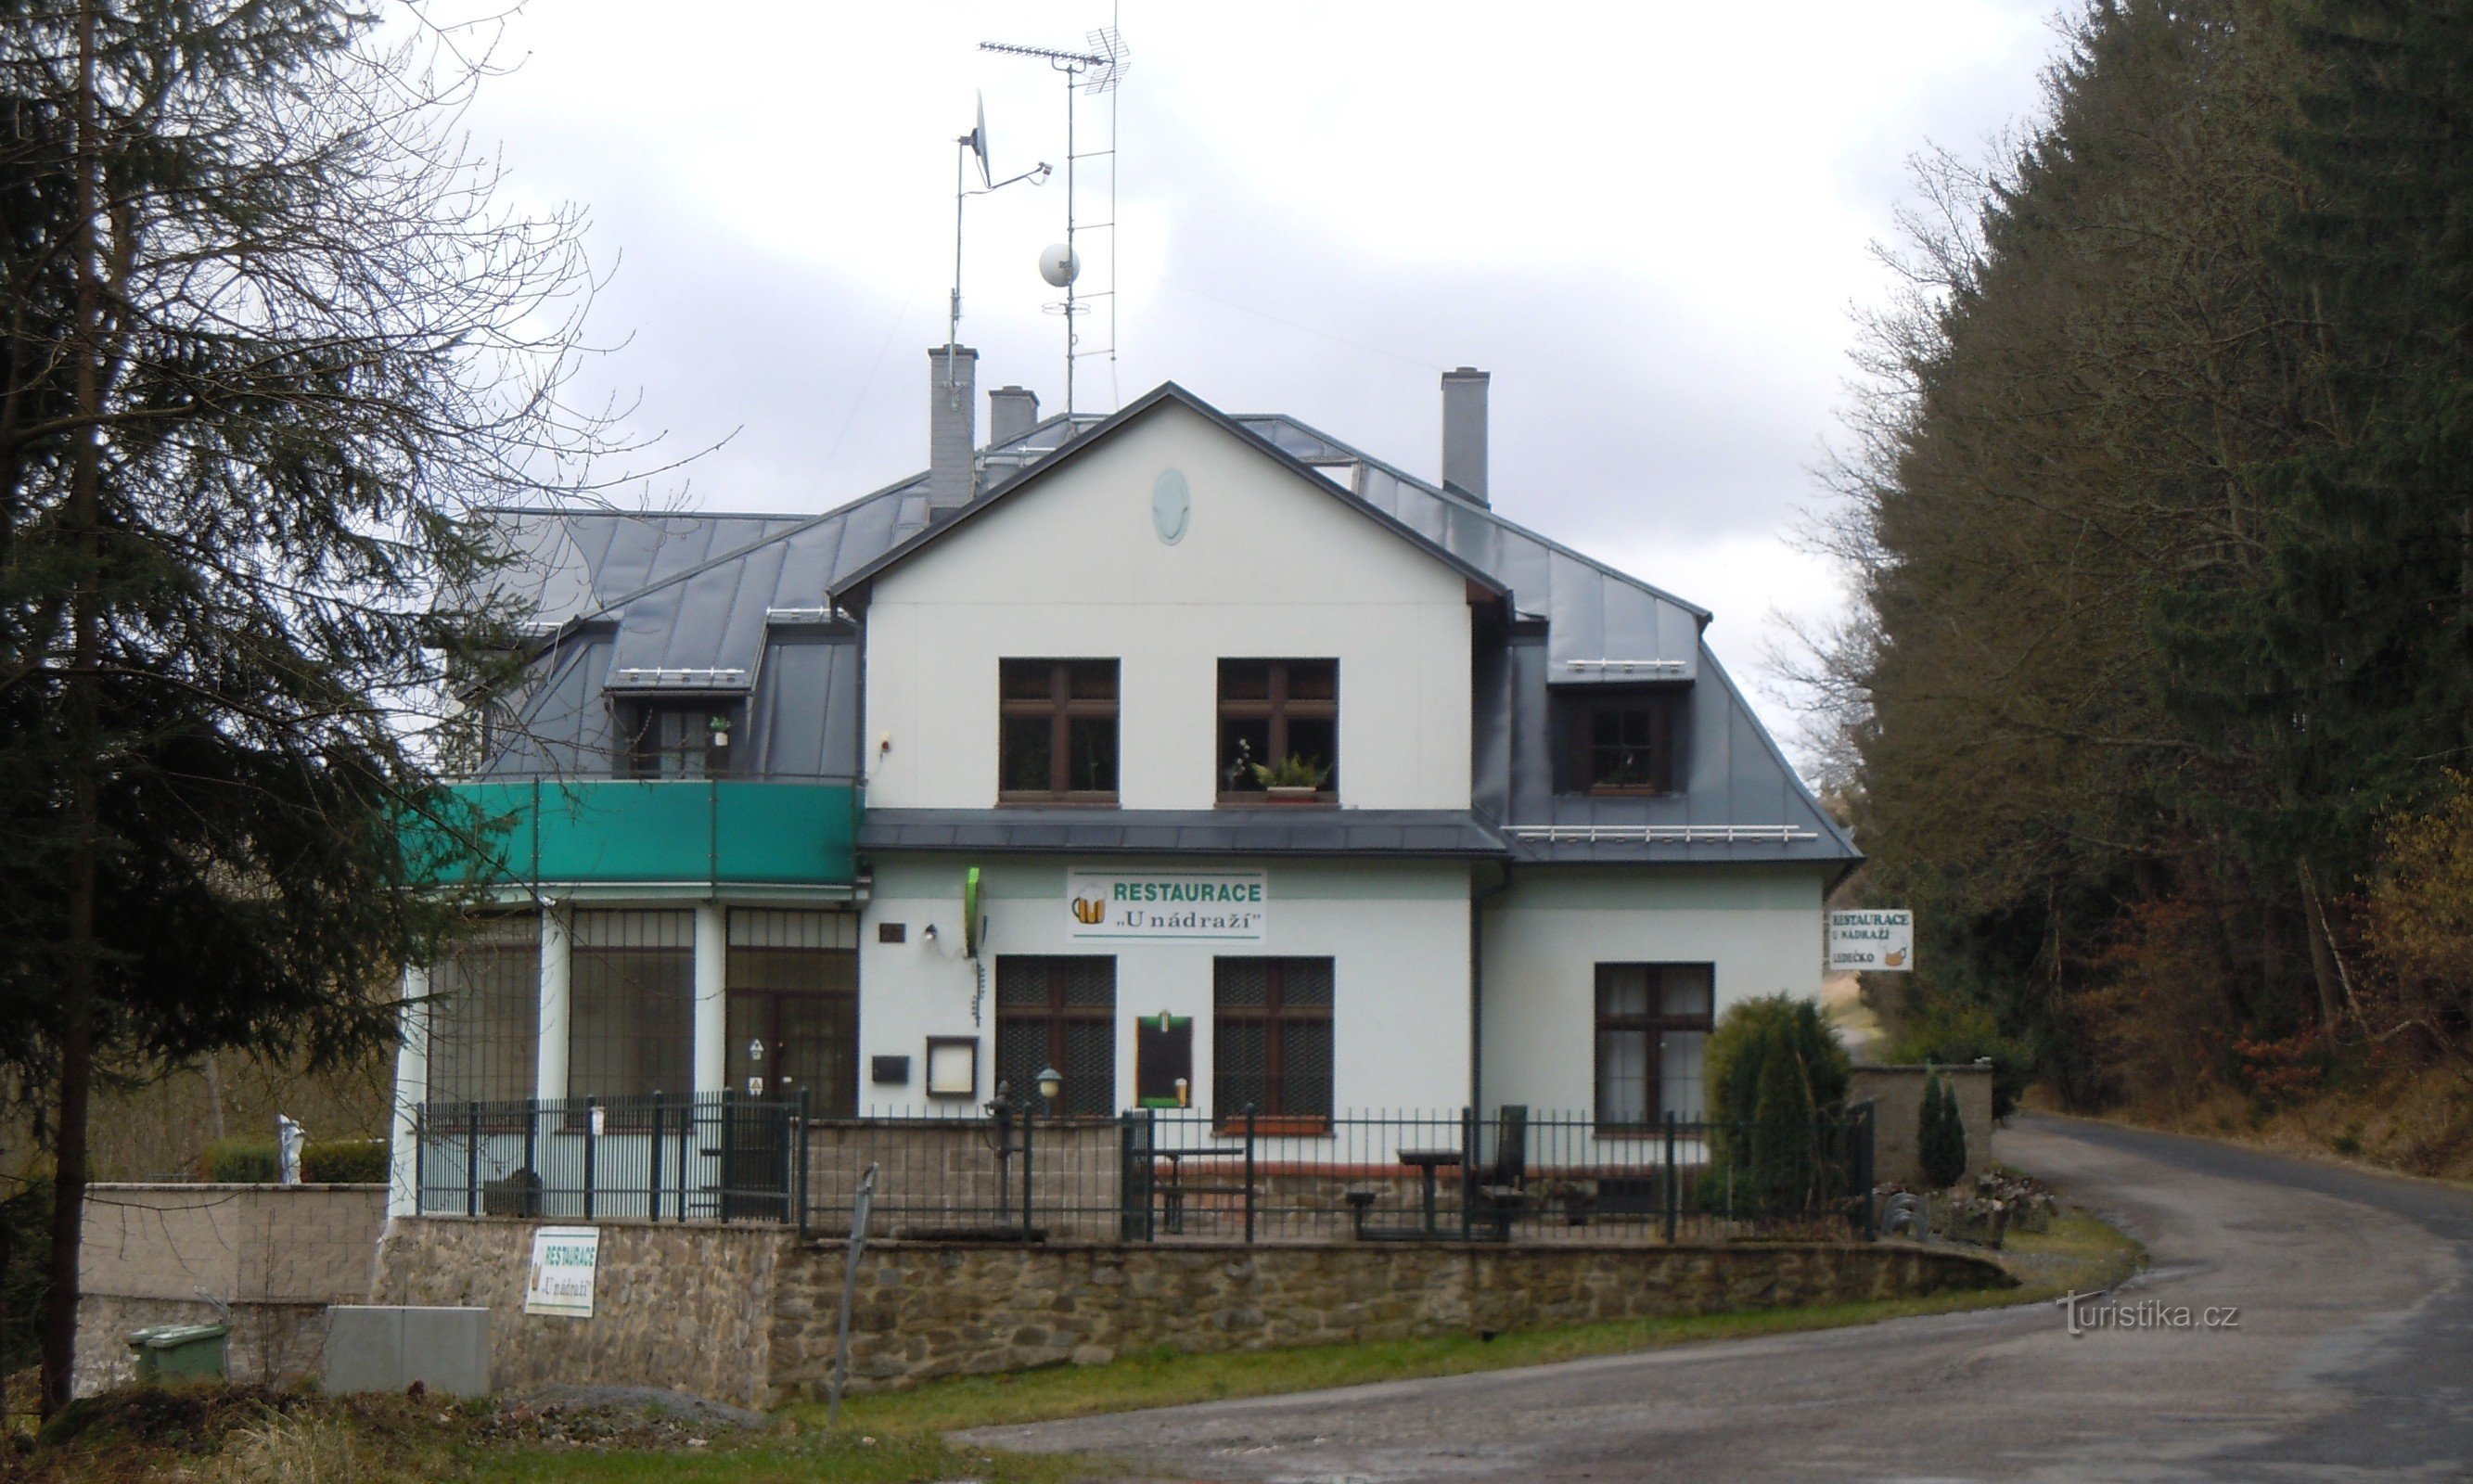 Restaurantgebäude am Bahnhof